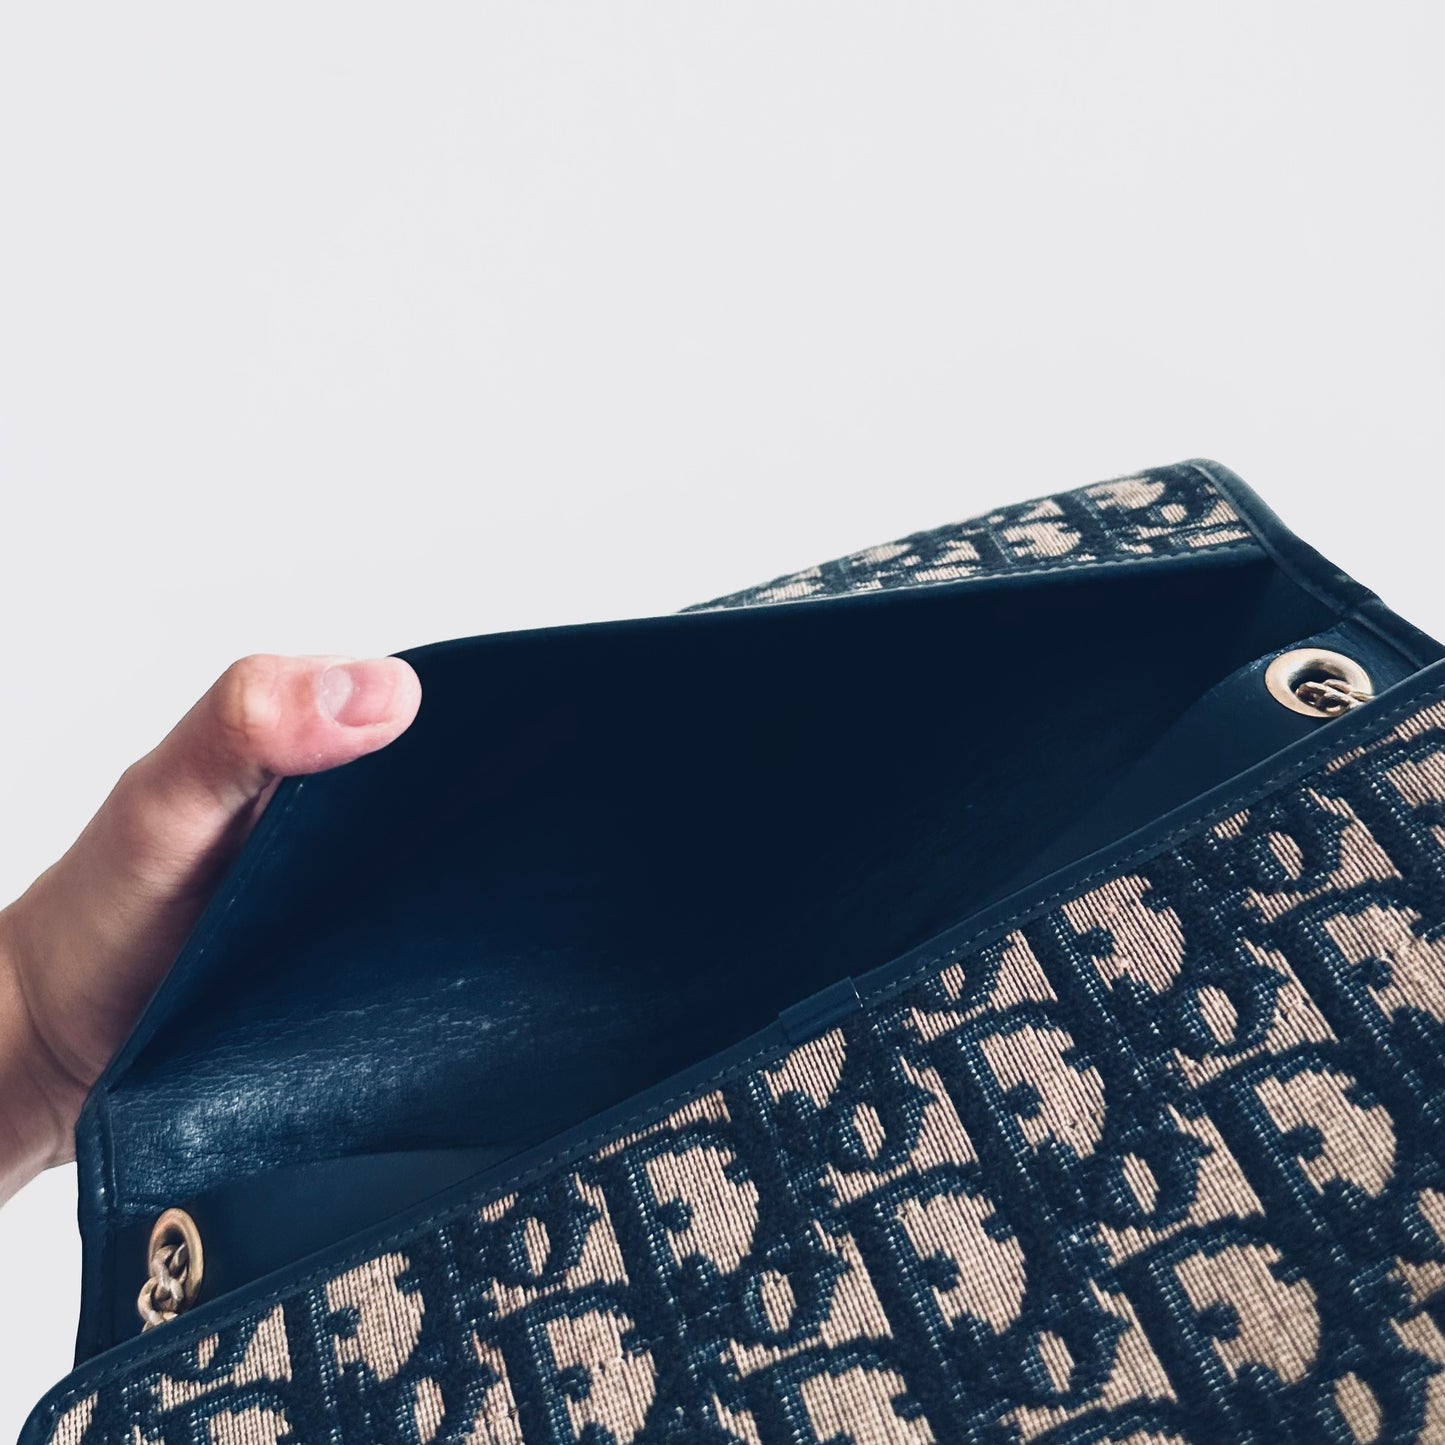 Christian Dior CD Navy Blue GHW Oblique Monogram Logo 2-Way Flap Vintage Shoulder Sling Bag